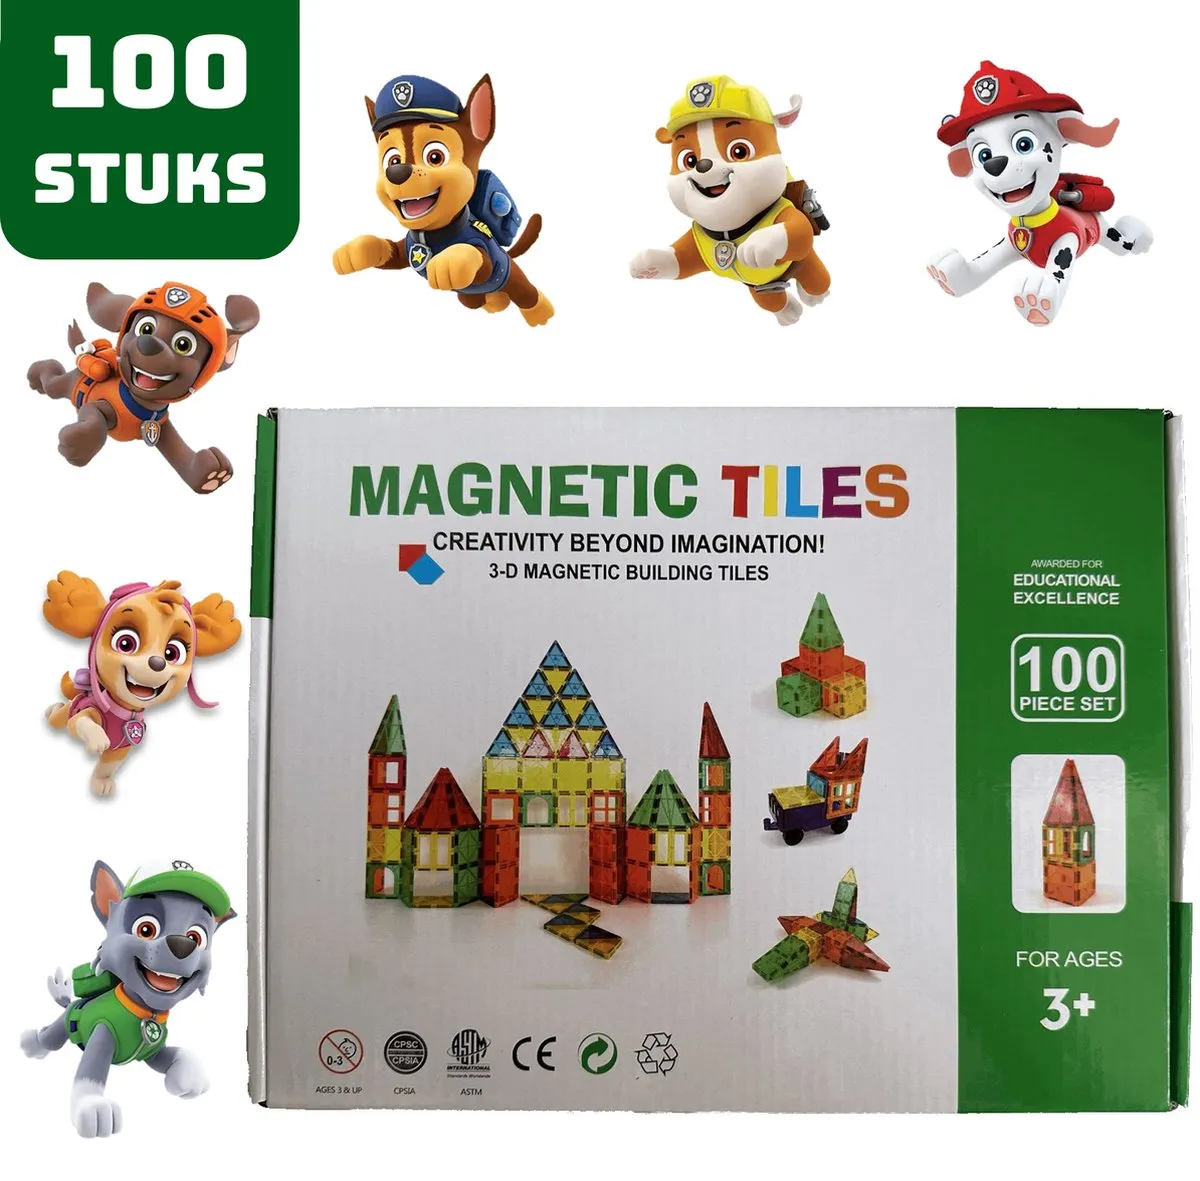 Magnetic Tiles - Magnaminds - Magna tiles - Magnetisch Speelgoed – 100 stuks - Constructie speelgoed - Magnetische tegels - Montessori speelgoed - Magnetic toys - Magnetische bouwstenen - Speelgoed 3-12 jaar - Magnetische Bouwblokken speelgoed